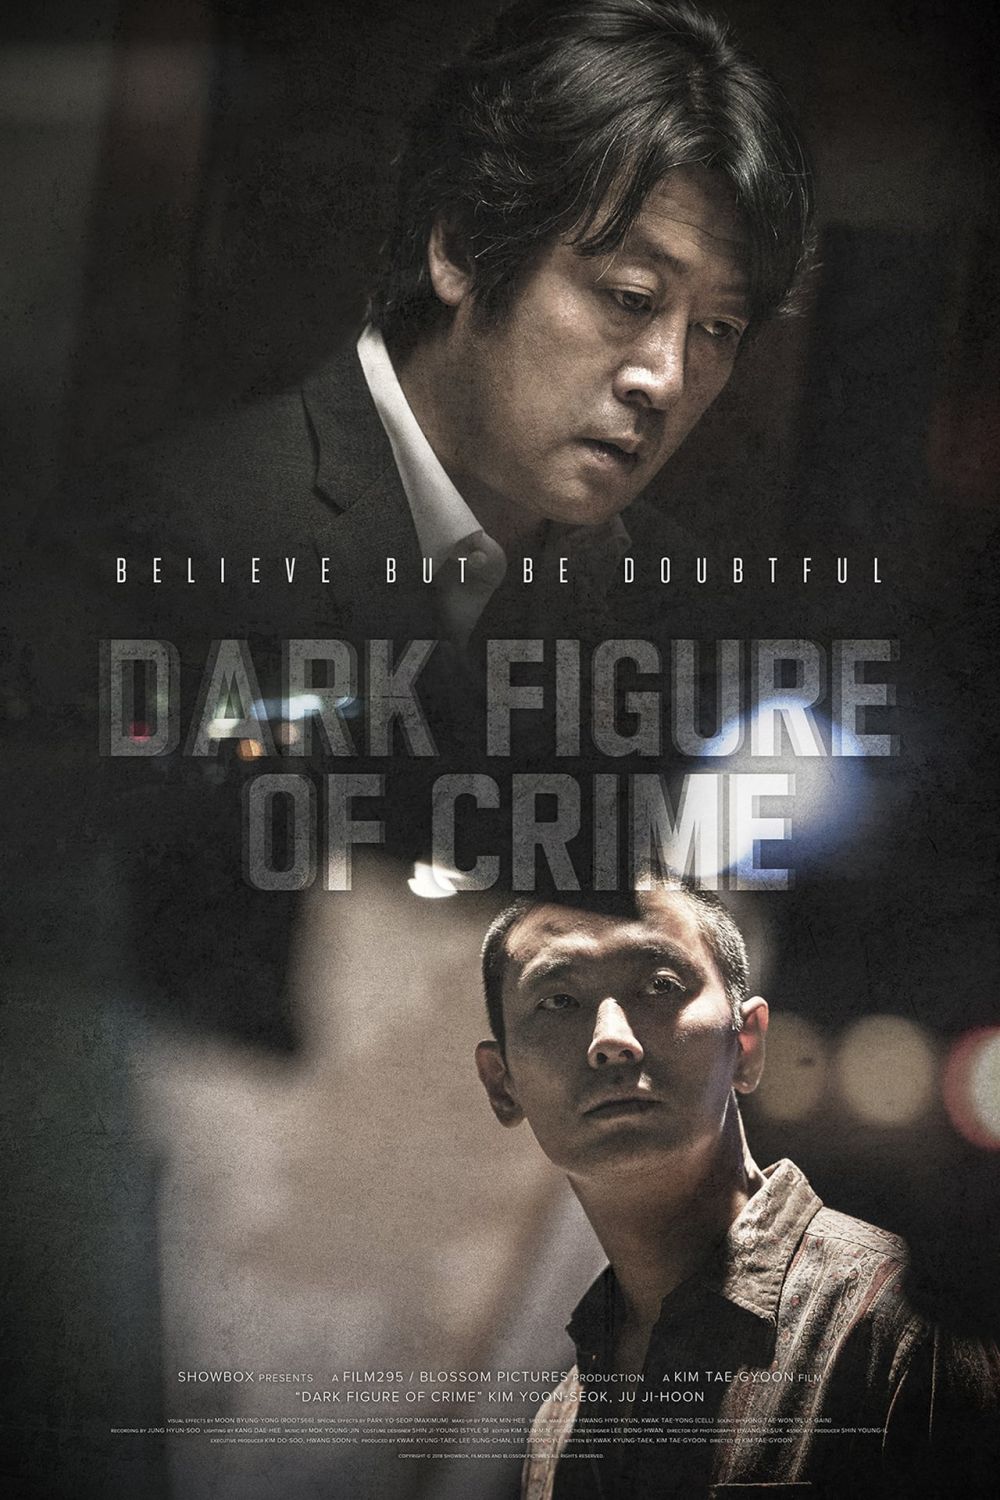 11 Film Korea pembunuh berantai penuh adegan mencekam dan mengerikan